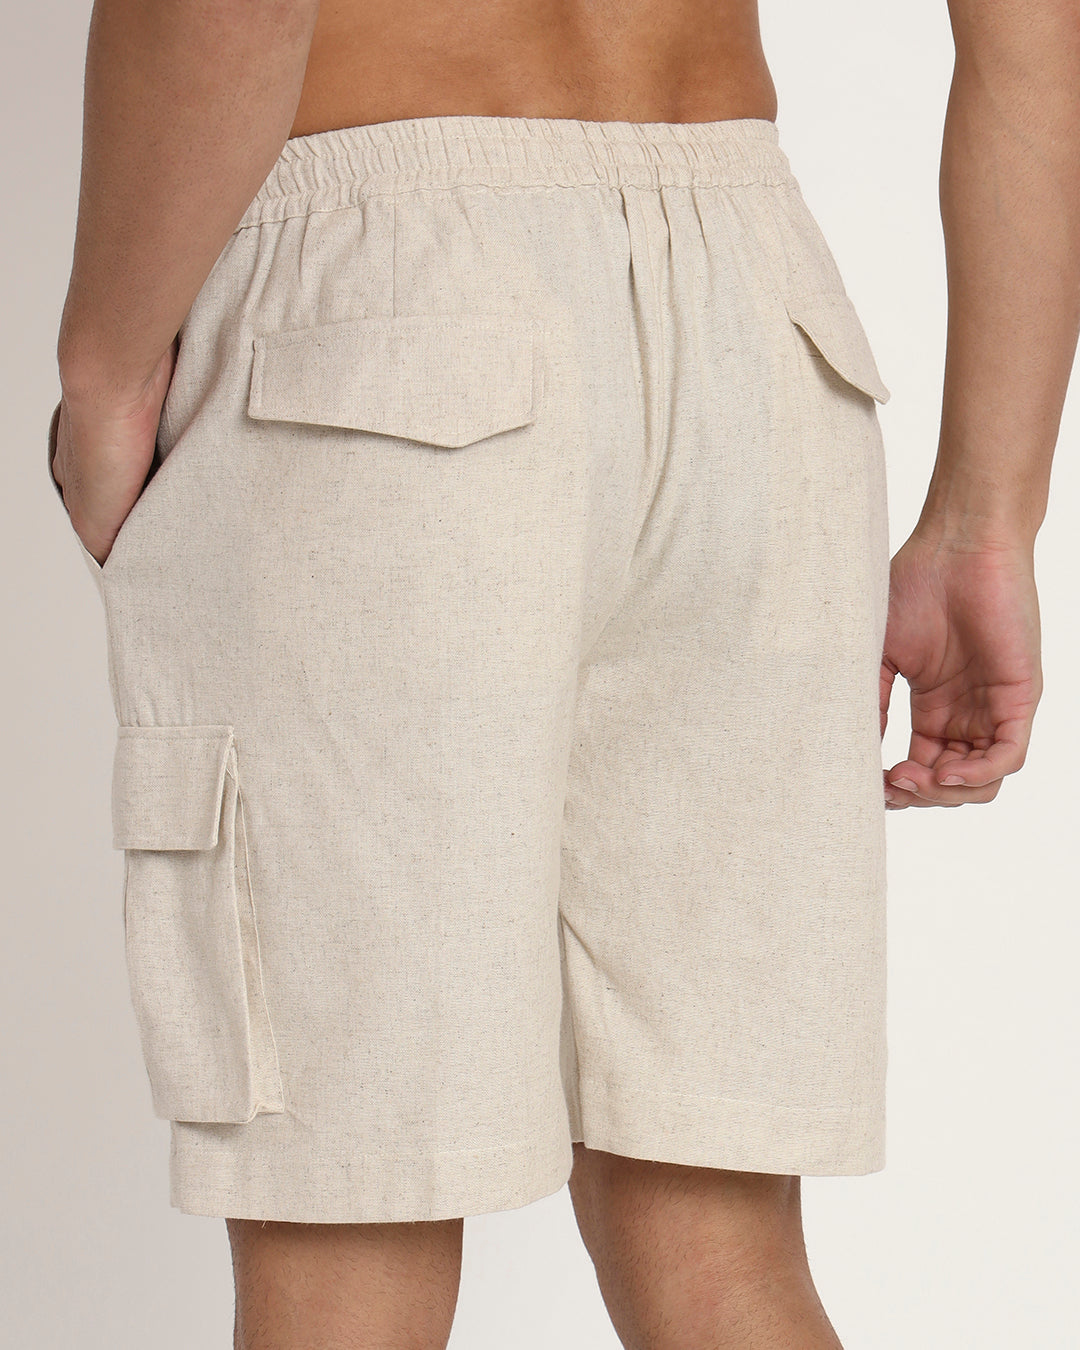 Cotton Comfort Cargo Beige Men's Shorts